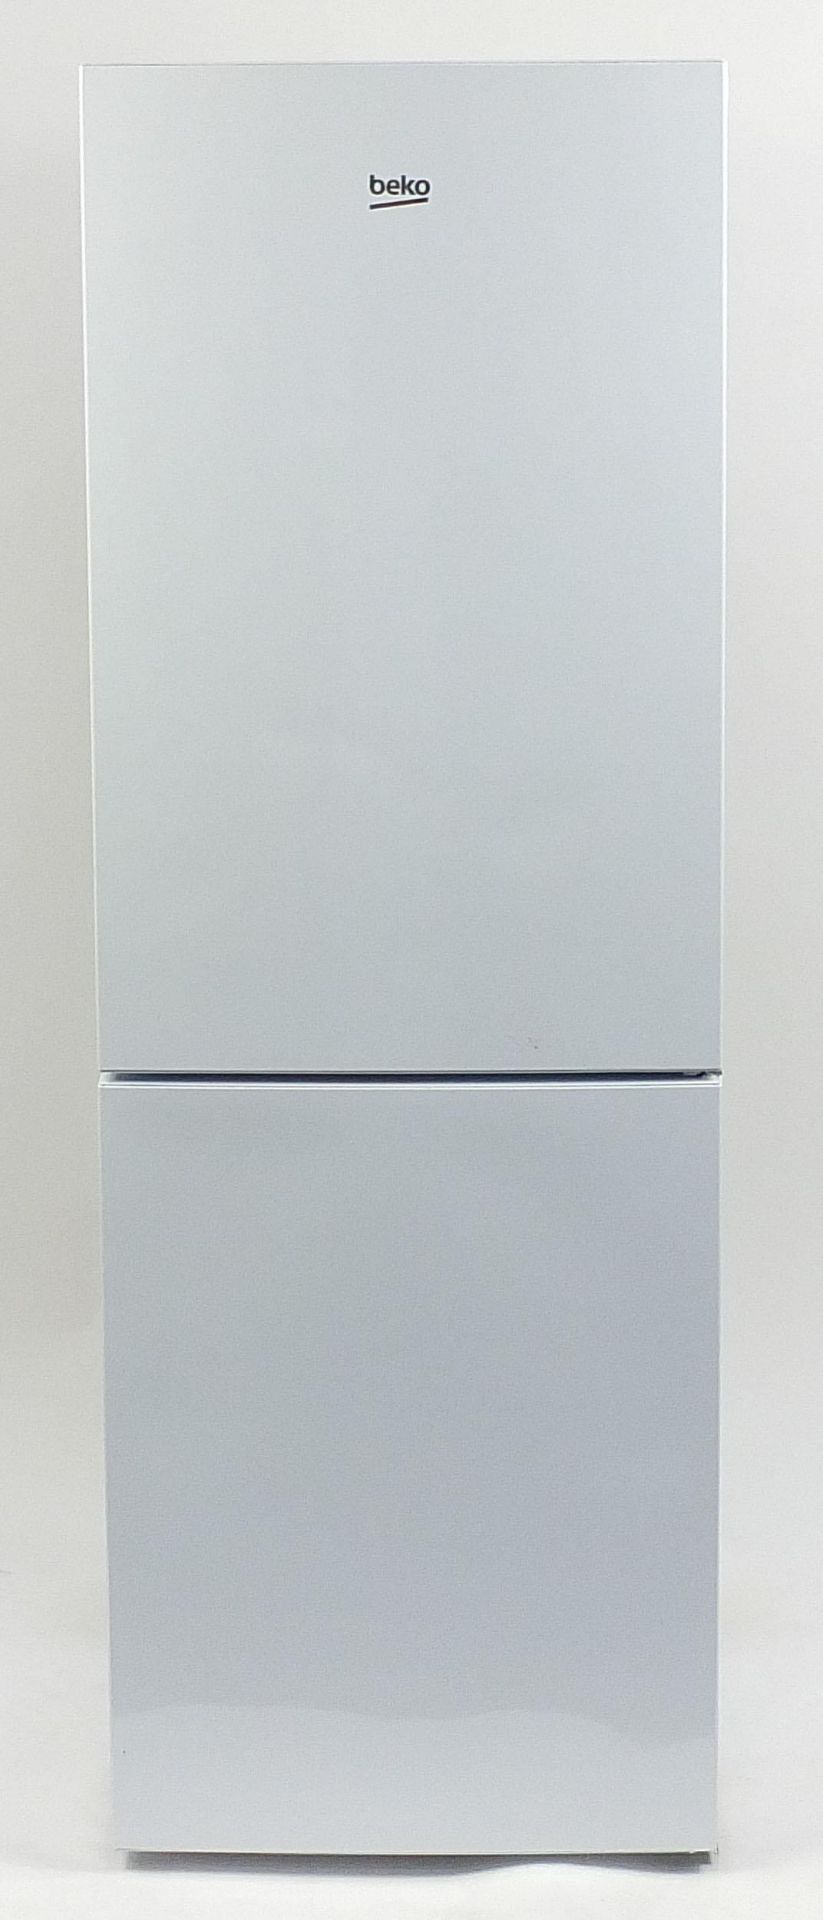 Beko fridge freezer, 172cm H x 59cm W x 64cm D